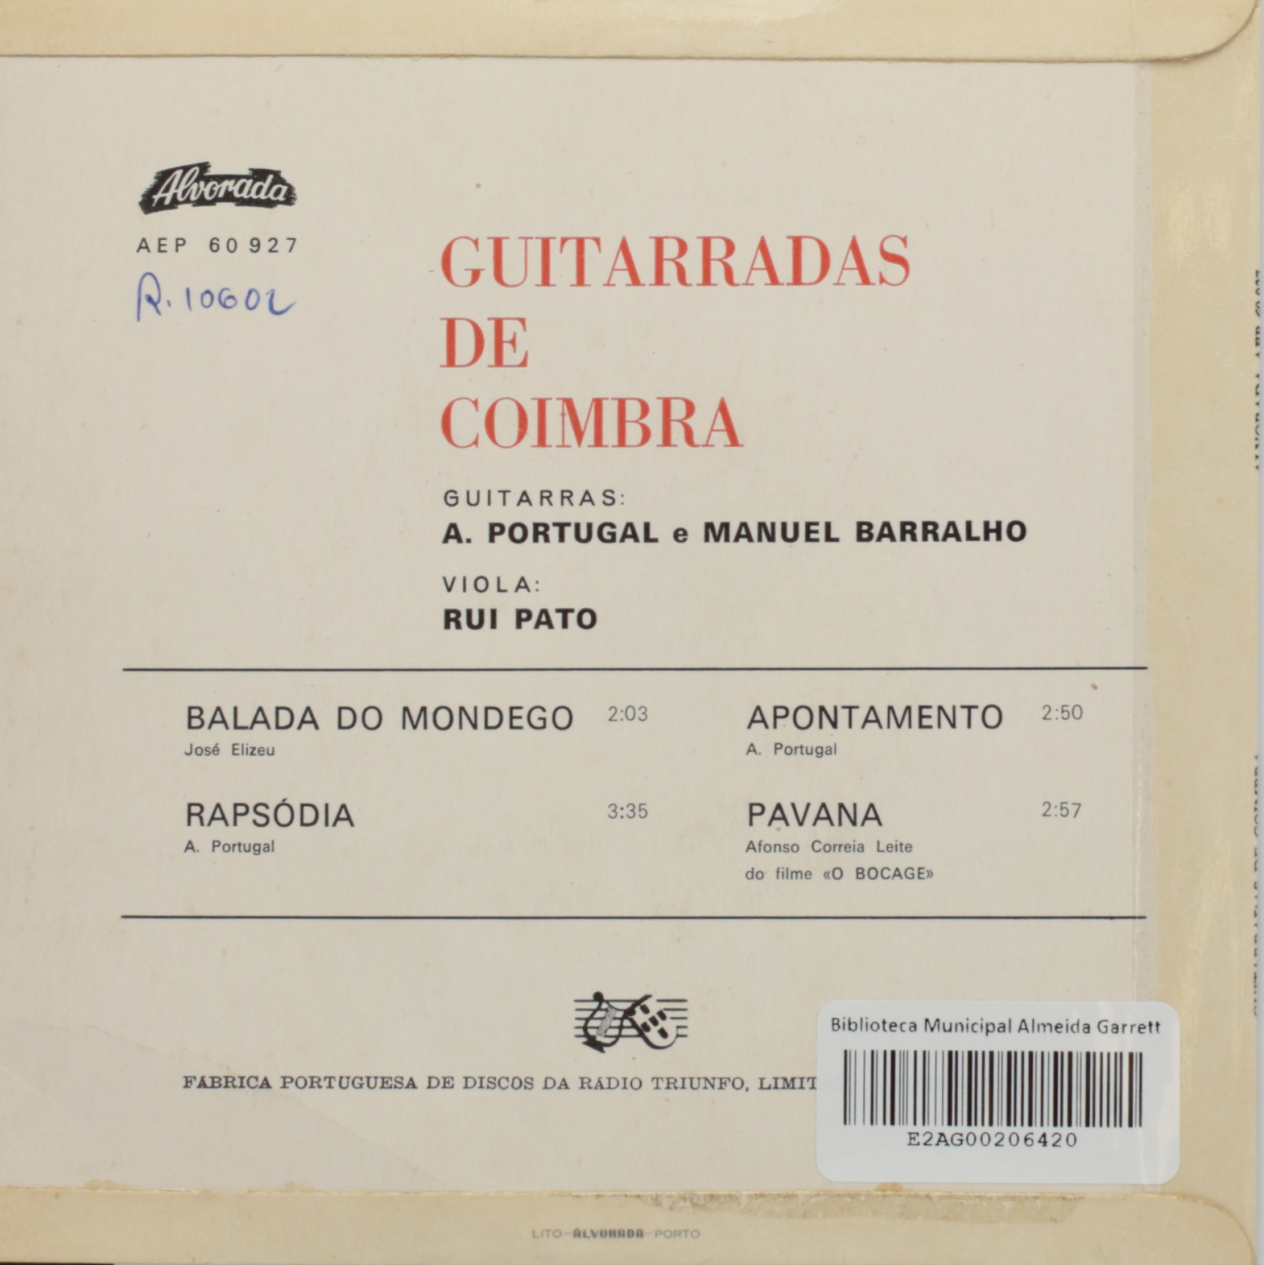 Guitarradas de Coimbra